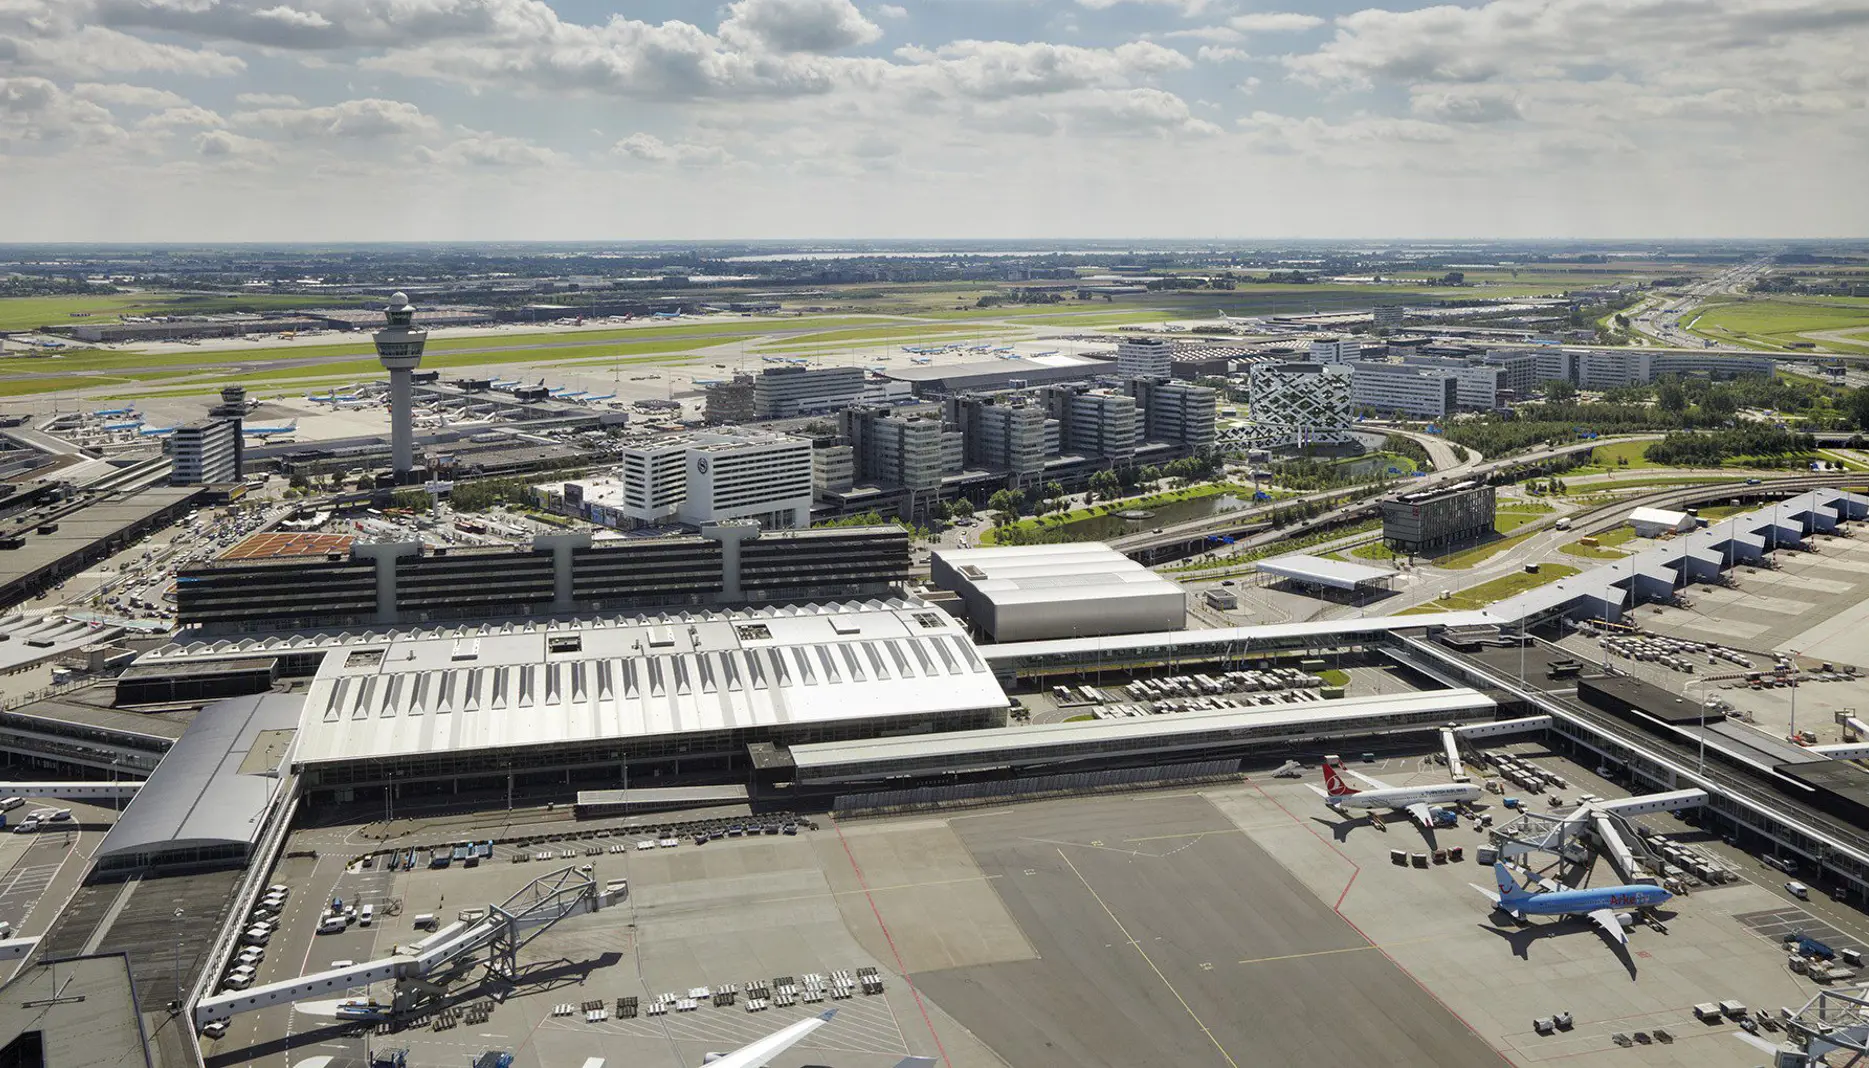 Minister en luchtvaartsector sluiten akkoord voor veiliger Schiphol